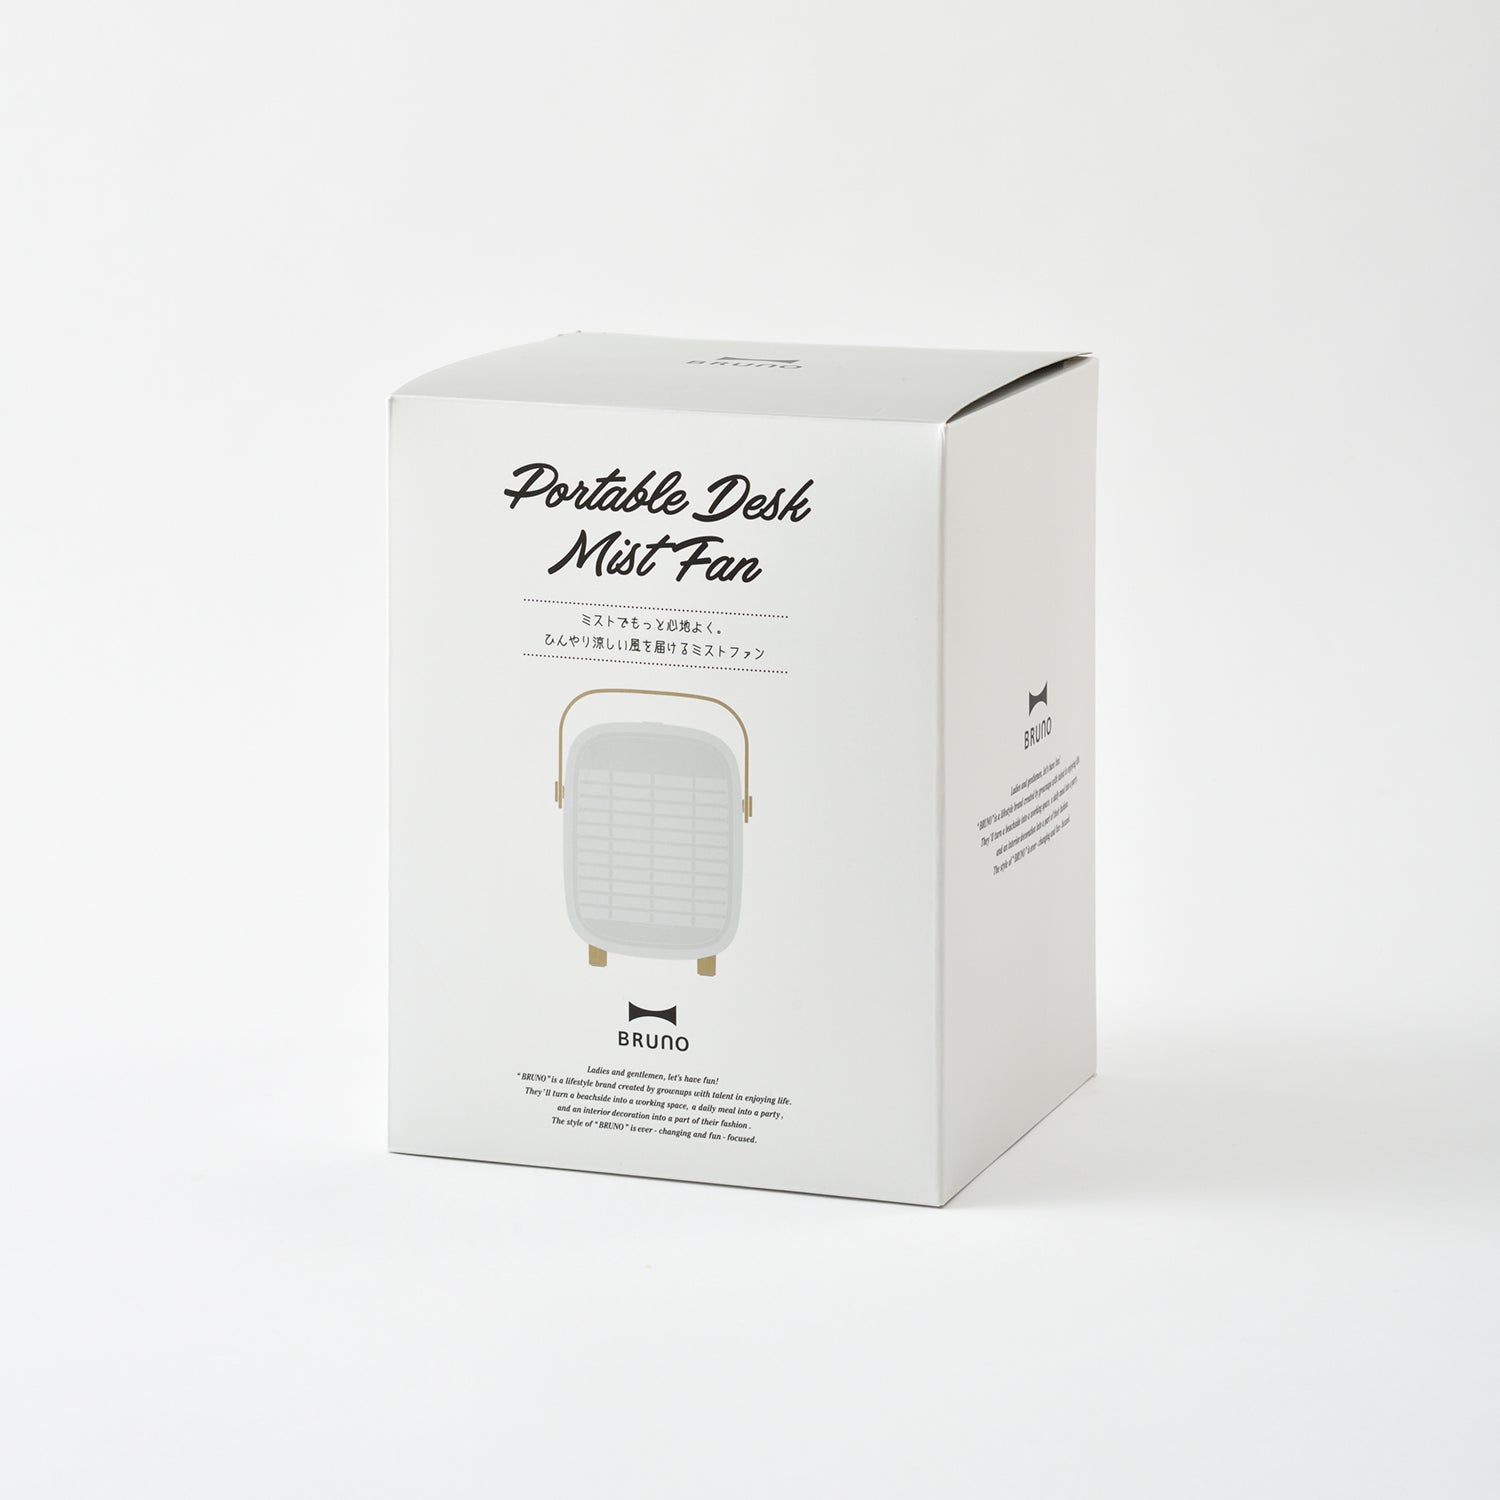 BRUNO Portable Desk Mist Fan - Gray BDE063-GY